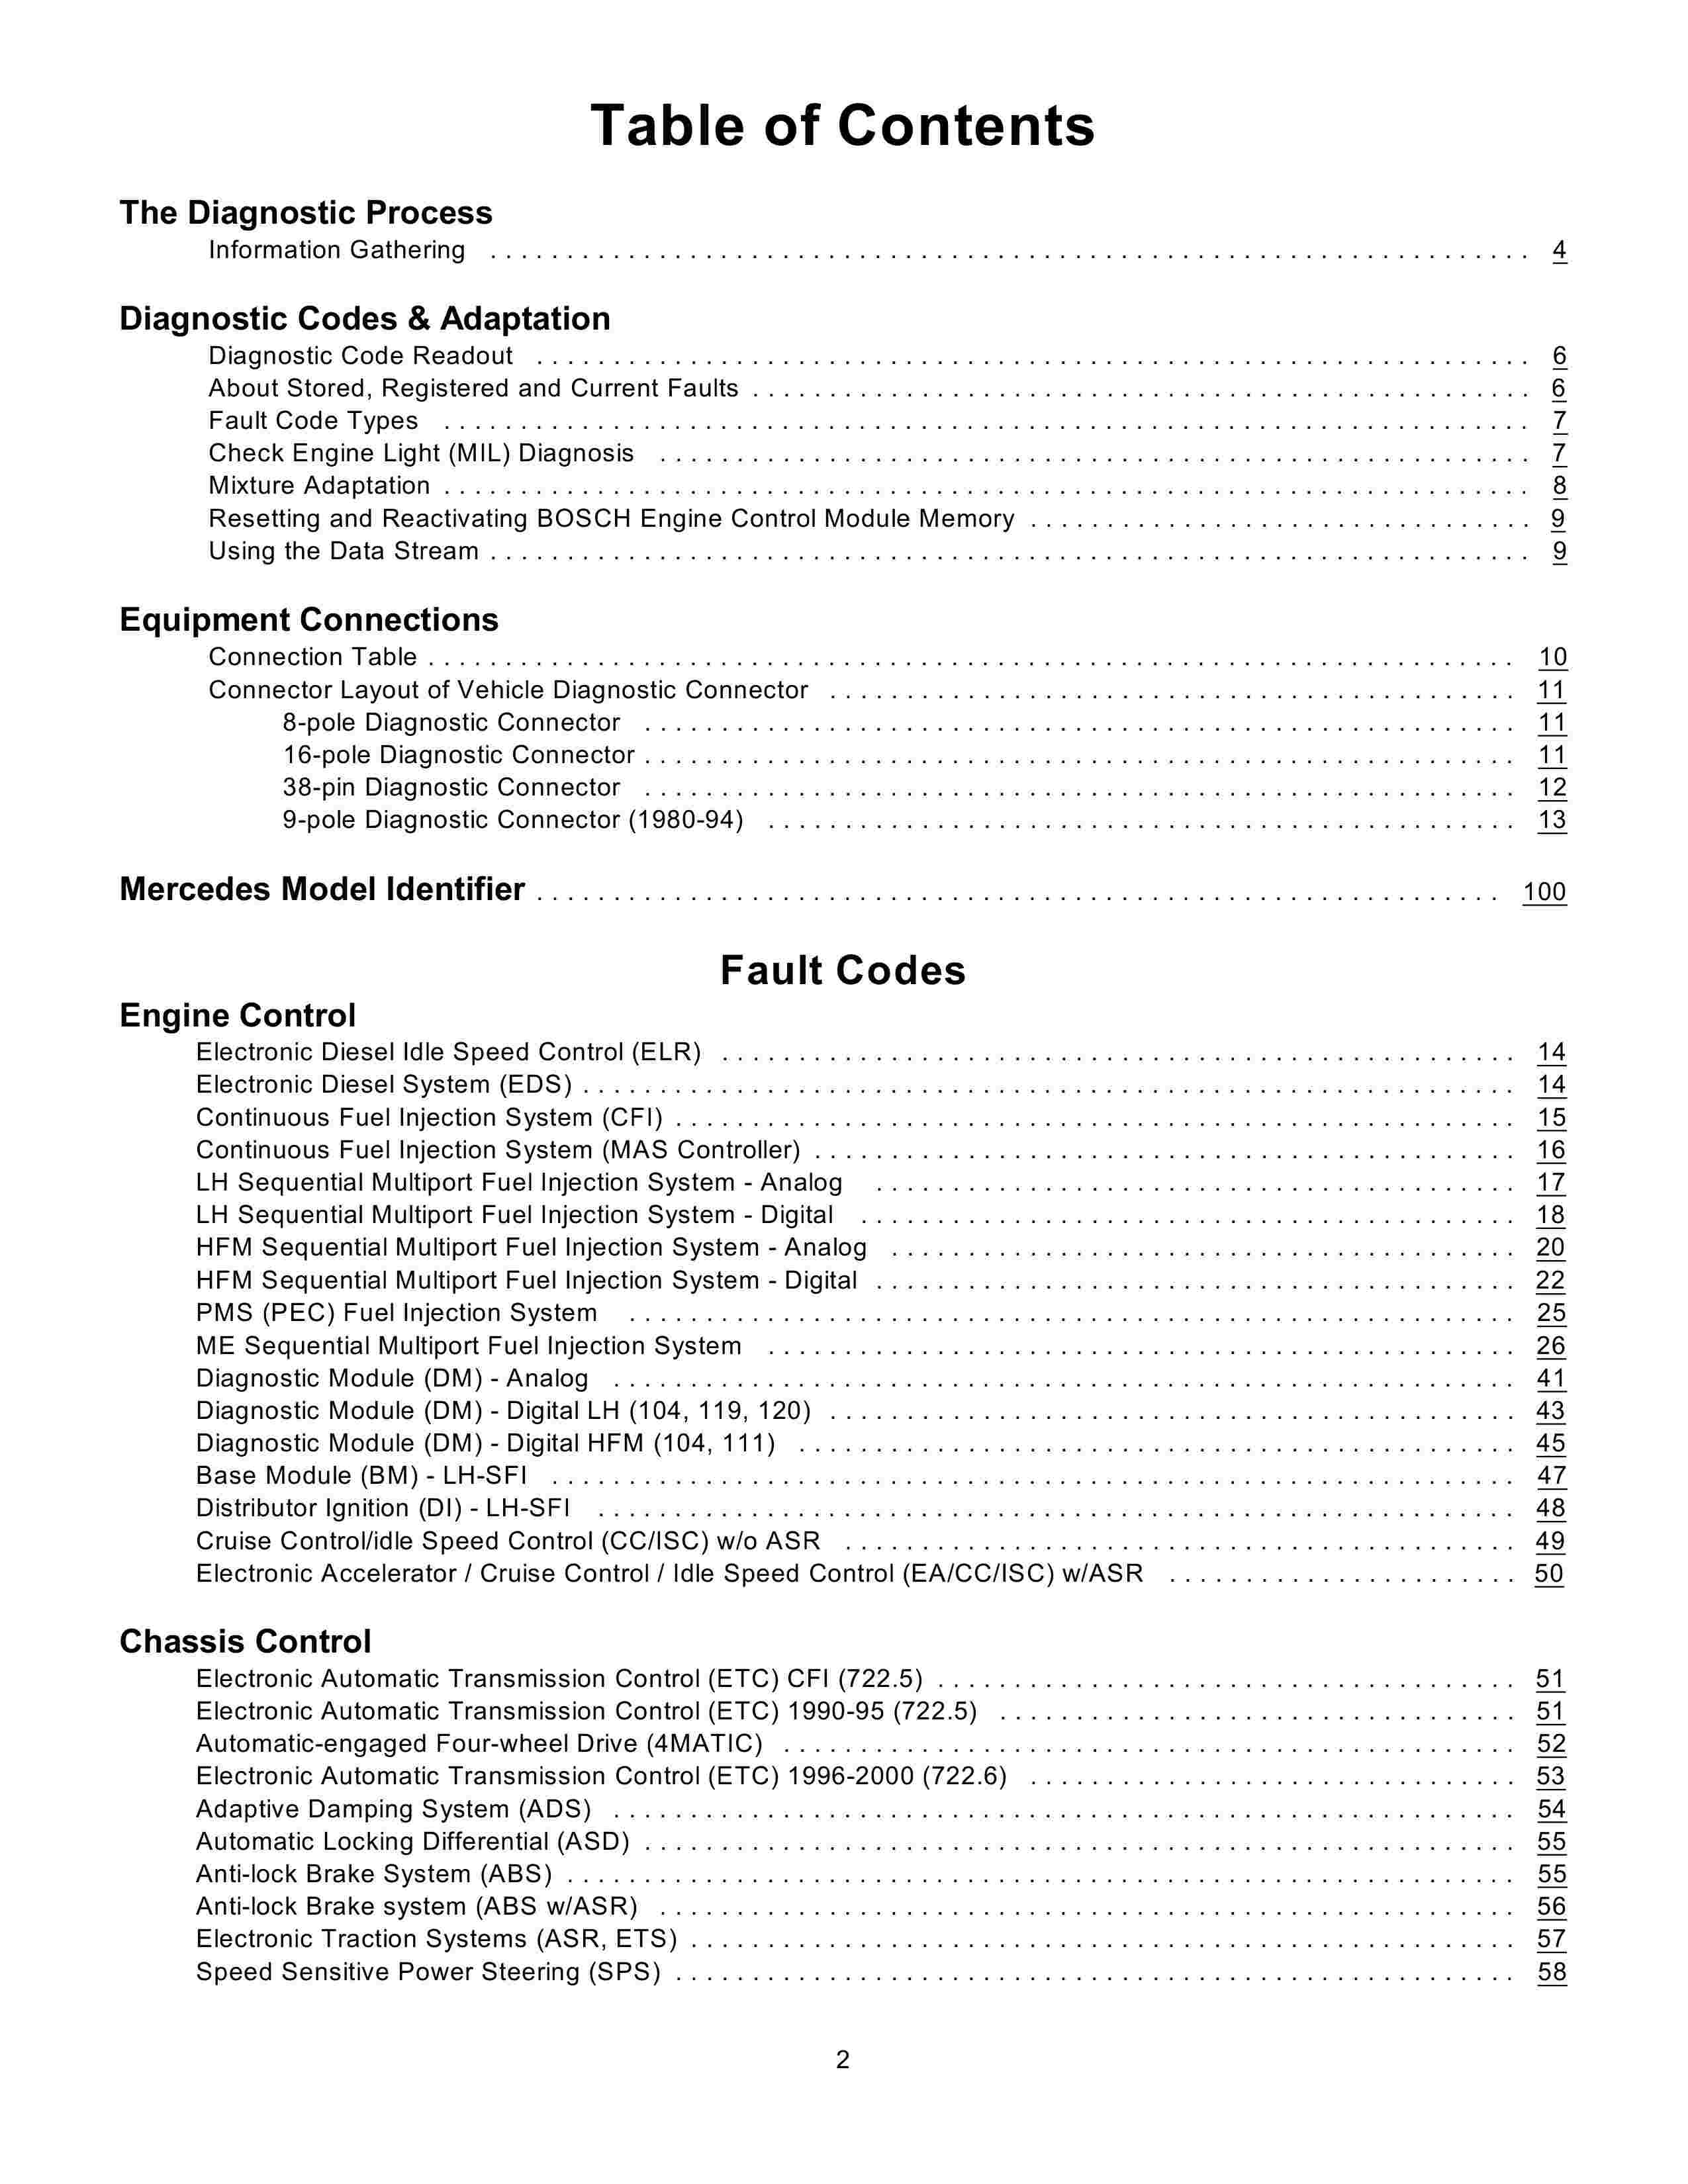 Lista de Códigos de falhas (fault codes) Mercedes-Benz 0002_143